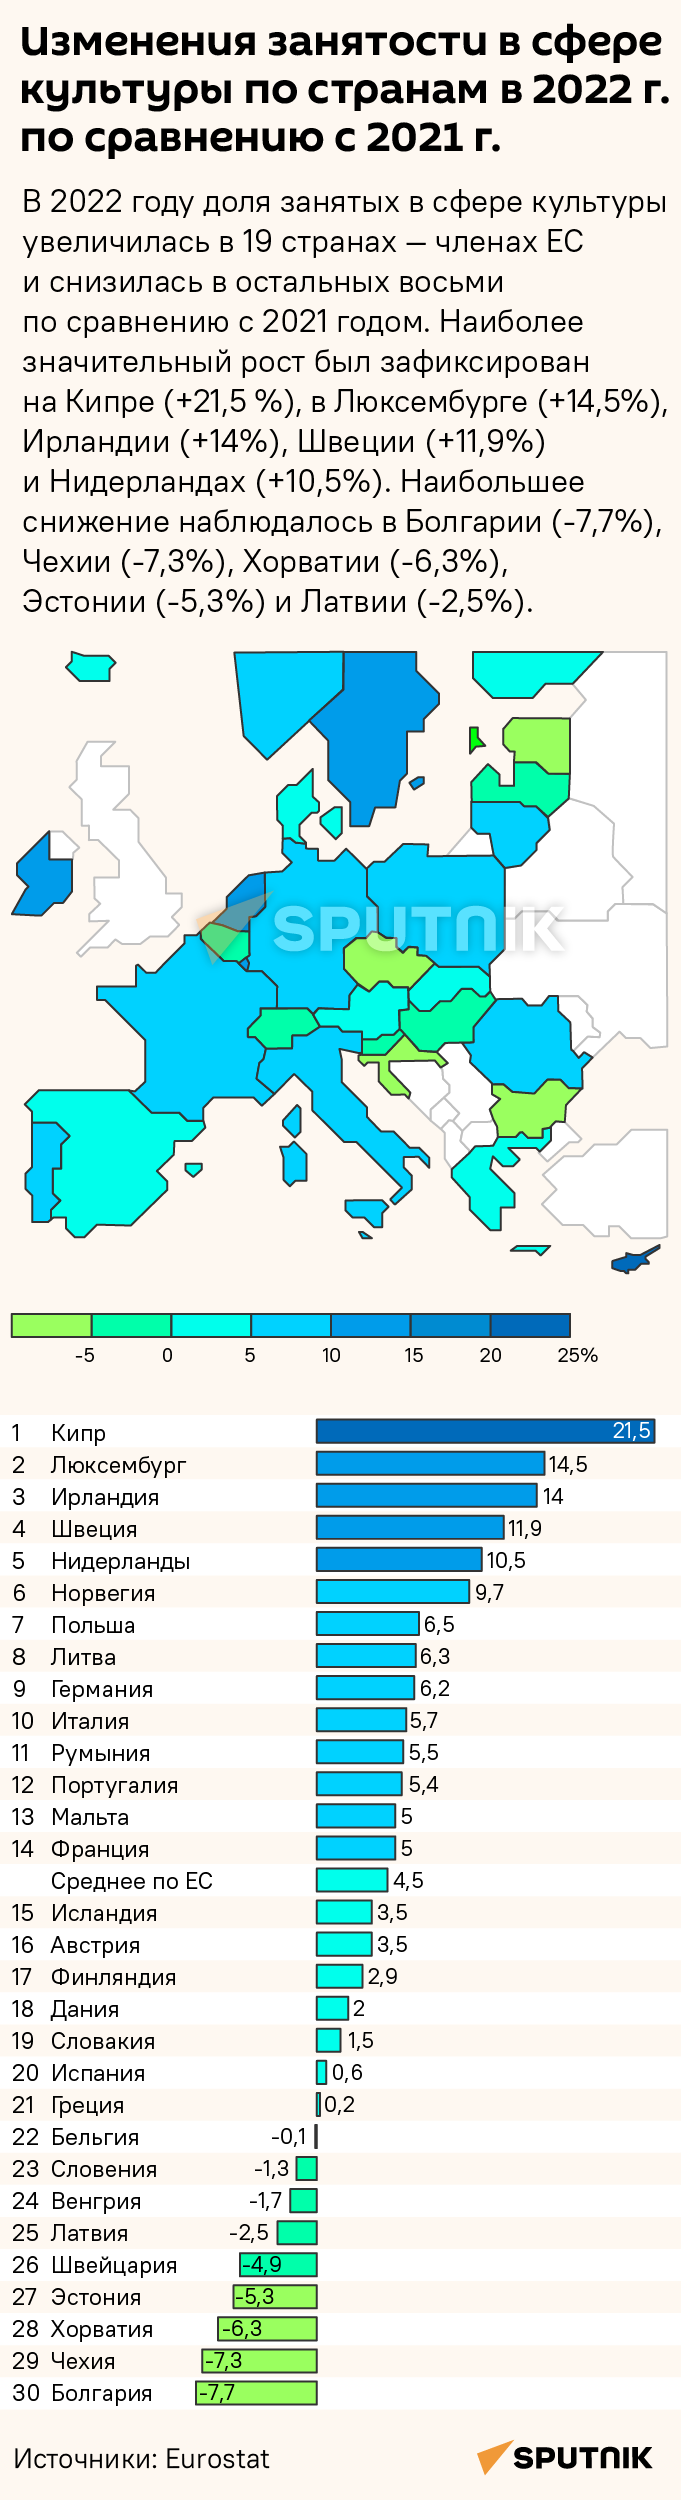 Изменения занятости в сфере культуры по странам ЕС в 2022 г. по сравнению с 2021 г. - Sputnik Латвия